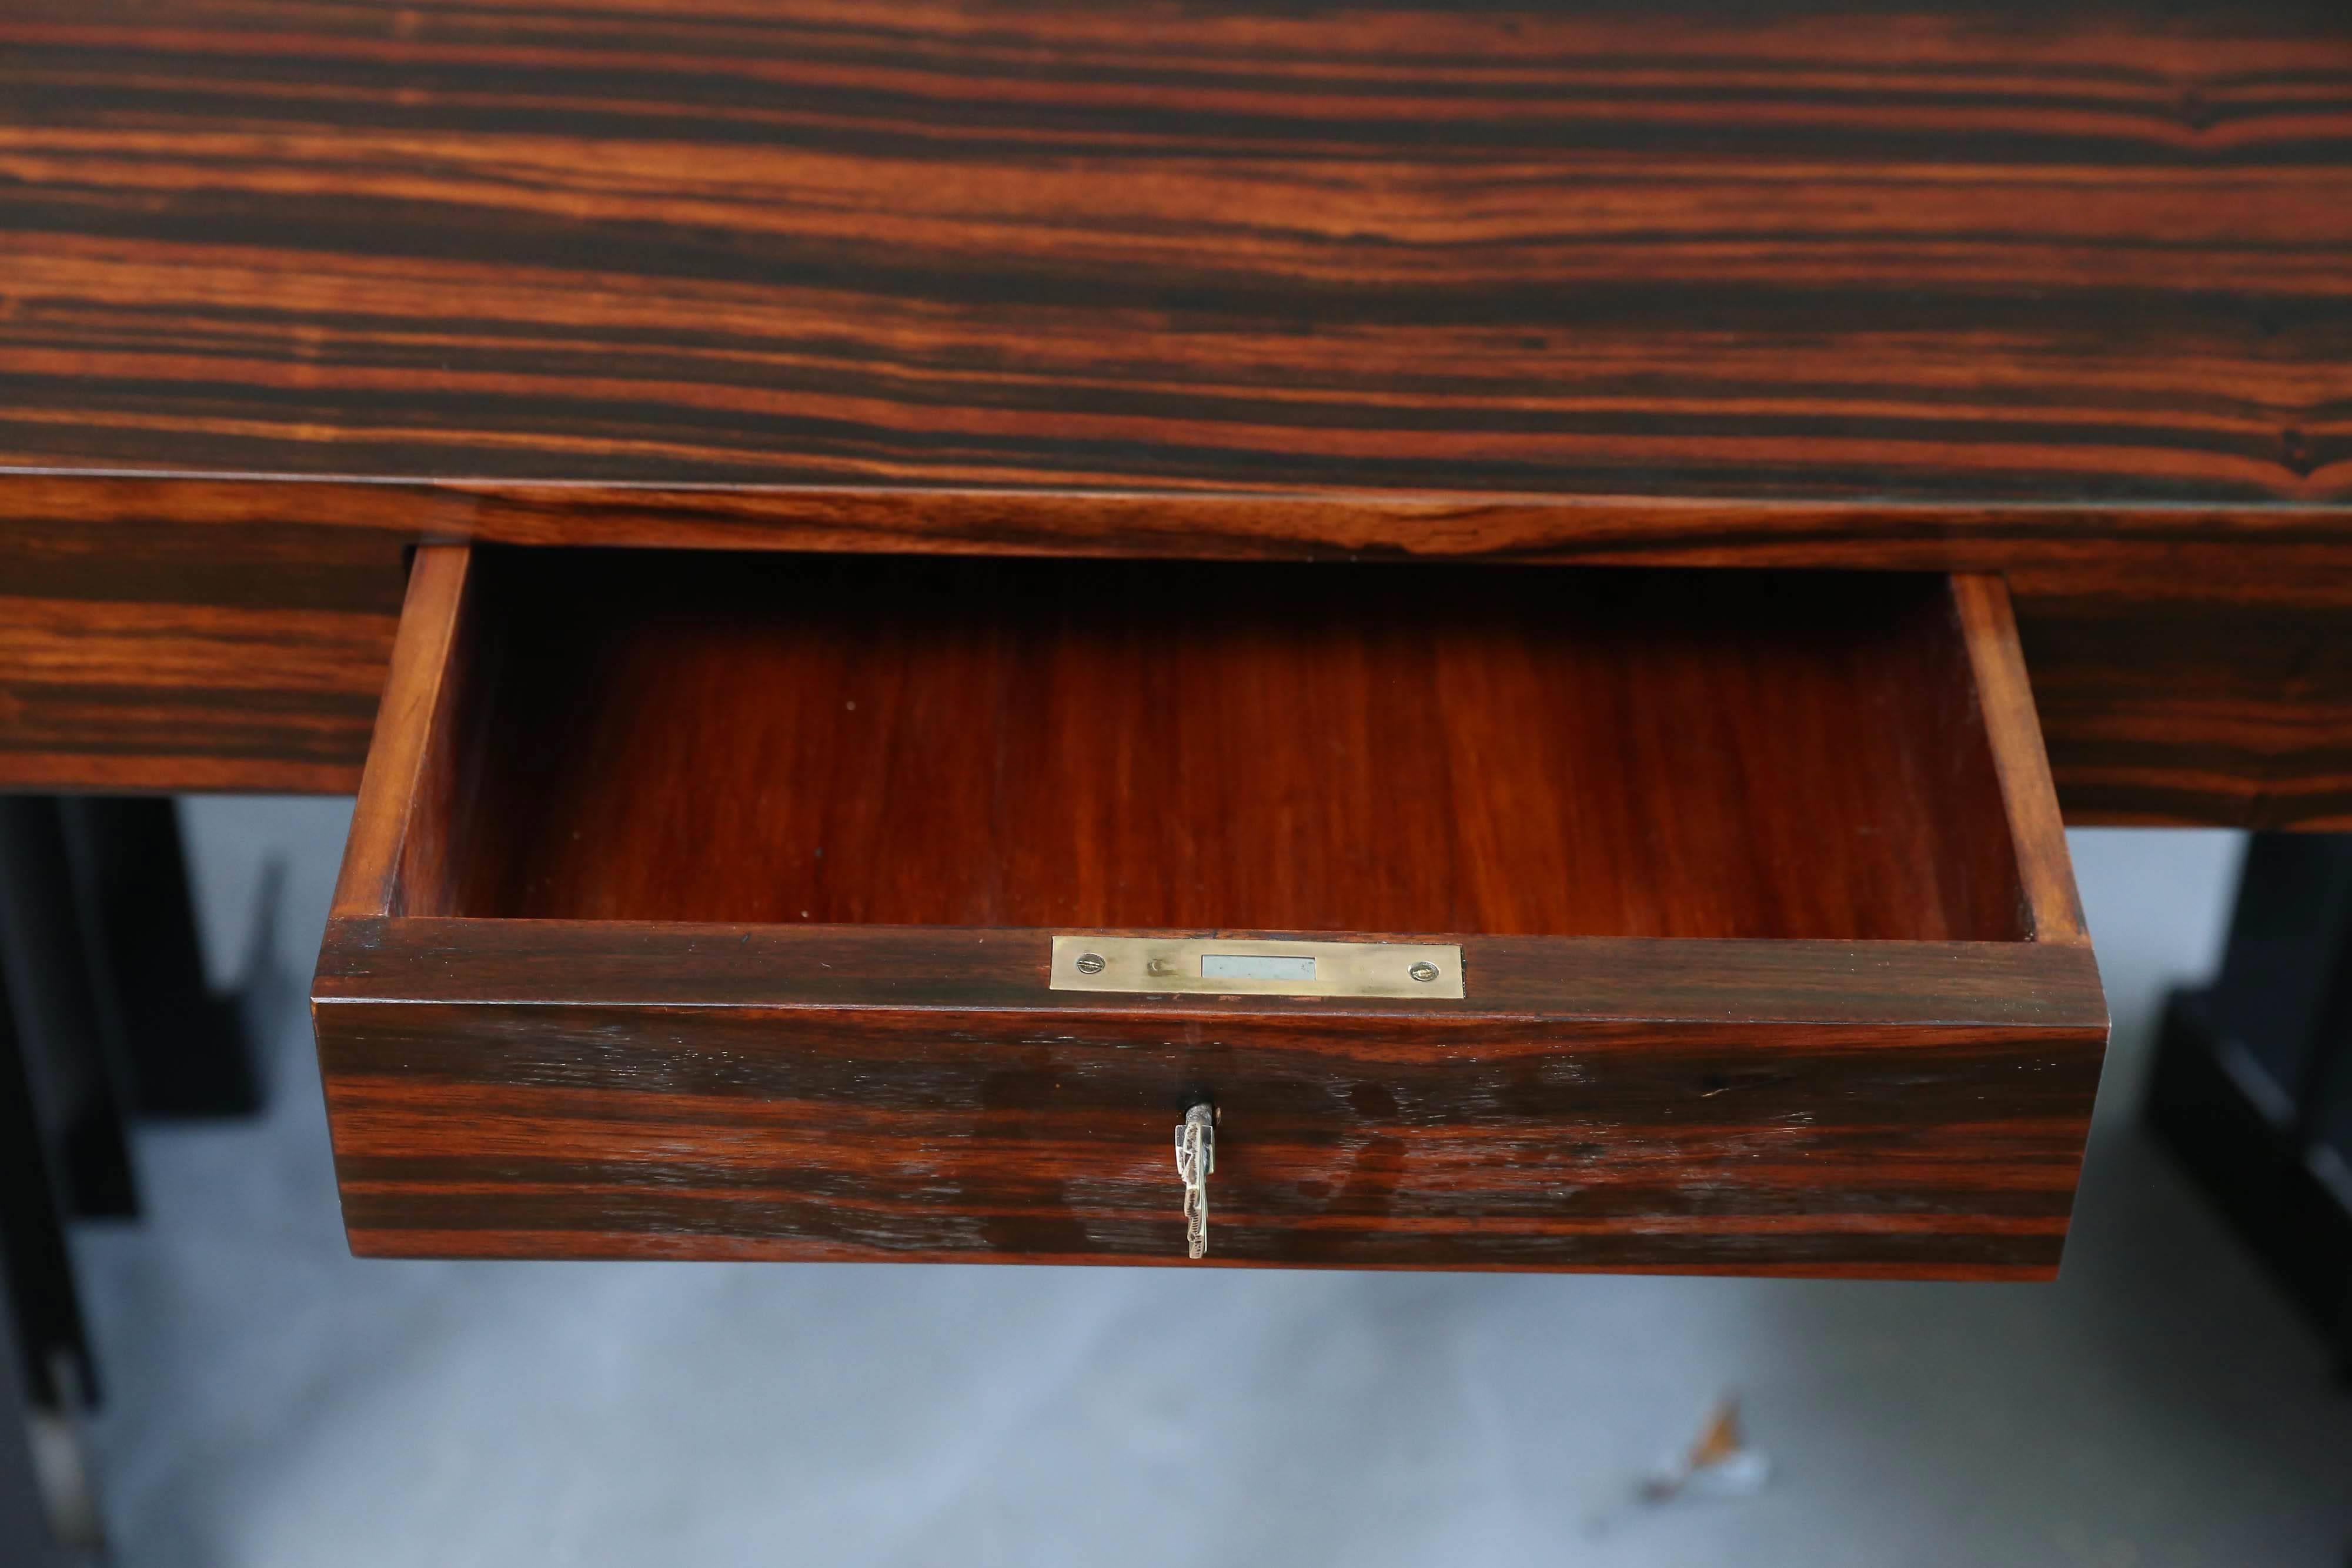 Das ungewöhnliche Design des Schreibtisches macht ihn zu einem einzigartigen Stück. Der Tisch ist aus Palisanderholz gefertigt und hat zwei Beine aus Metallplatten. In der Mitte der Tischfront befindet sich eine kleine Schublade. Die Tischplatte hat